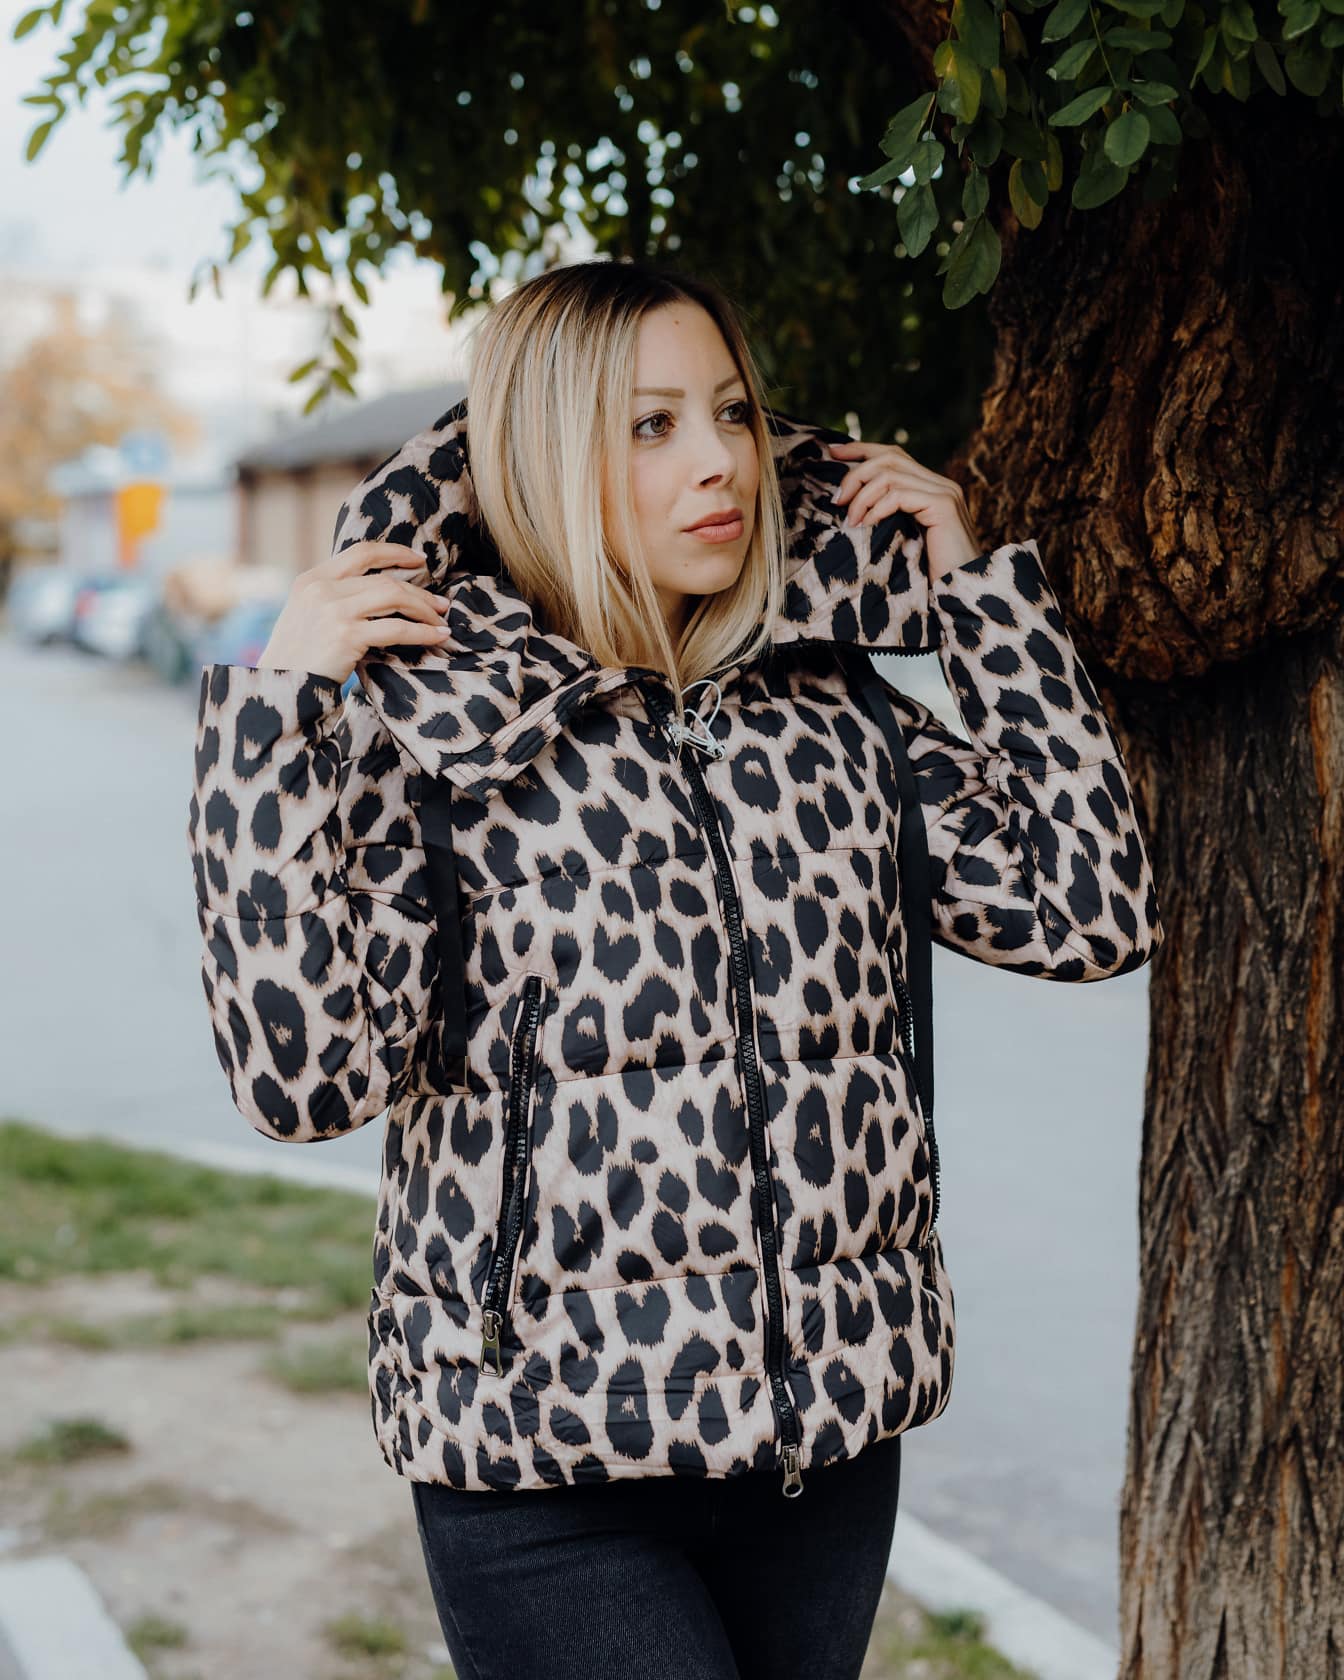 Modelo de moda da mulher em uma jaqueta moderna com um design de pele de leopardo